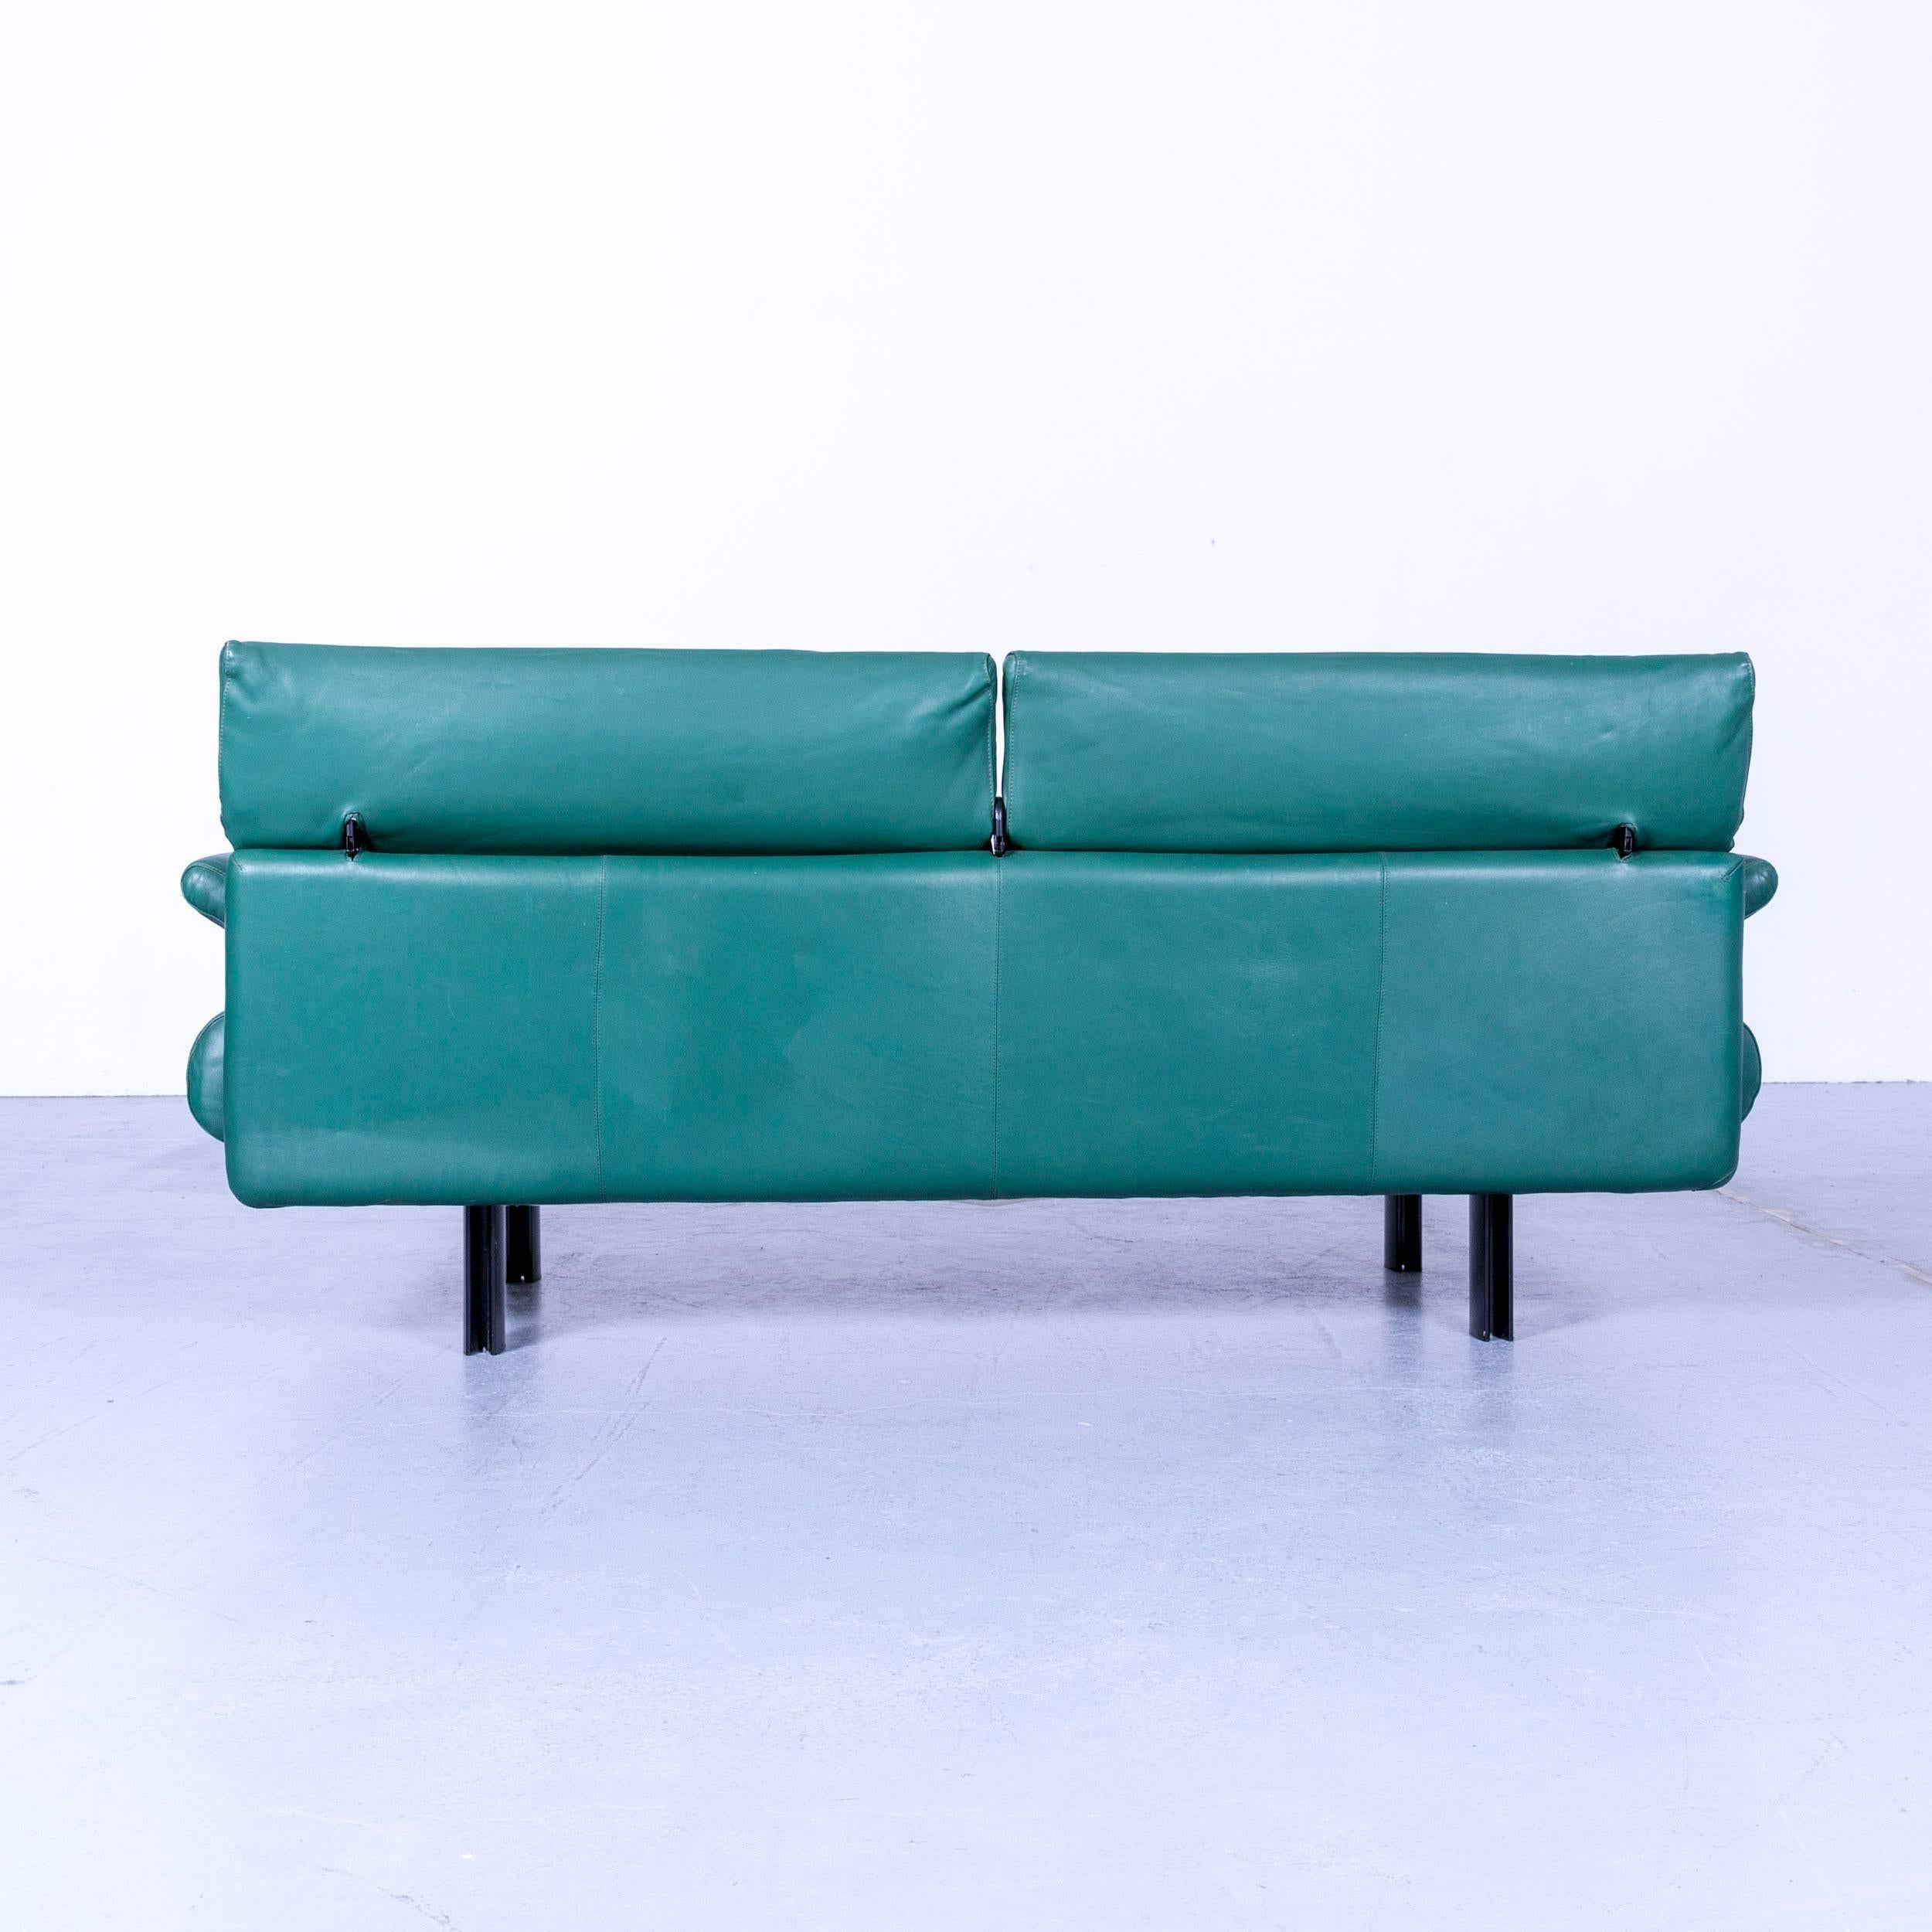 B & B Italia Alanda Leather Sofa Turquoise Blue Two-Seat For Sale 5